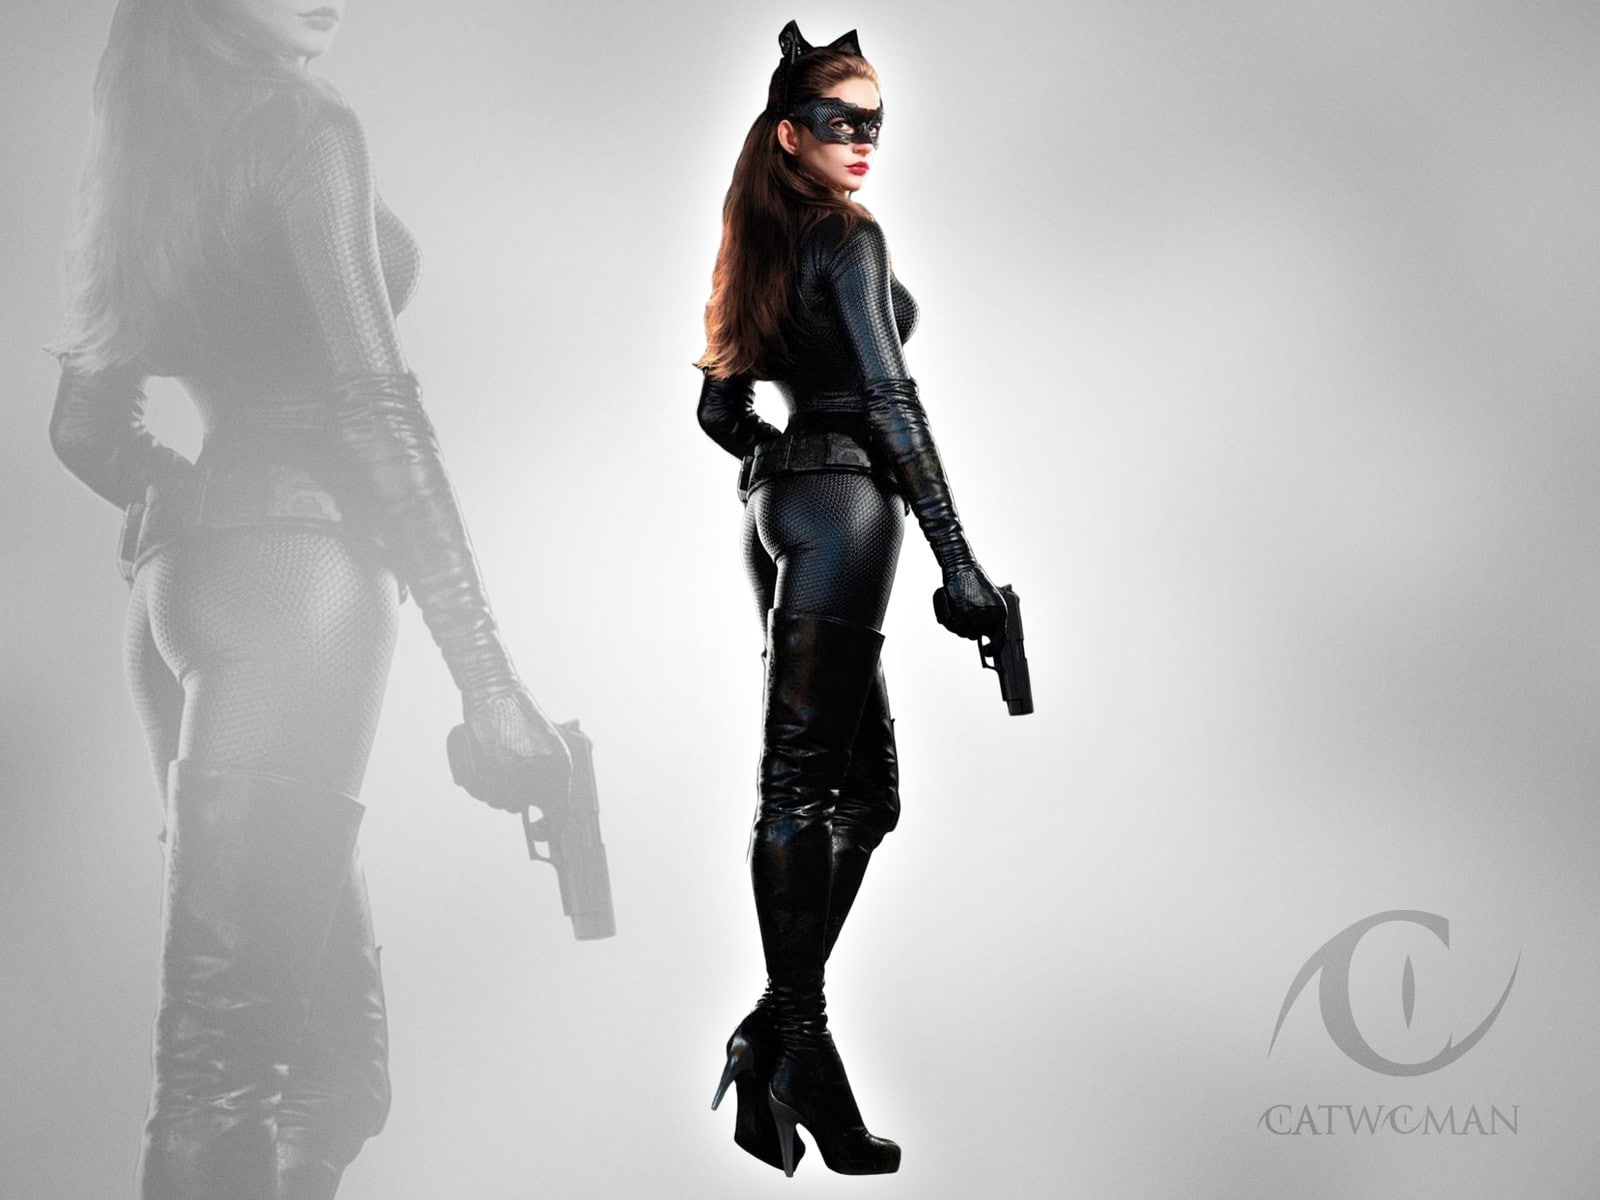 Free download | HD wallpaper: Batman The Dark Knight Rises Catwoman ...